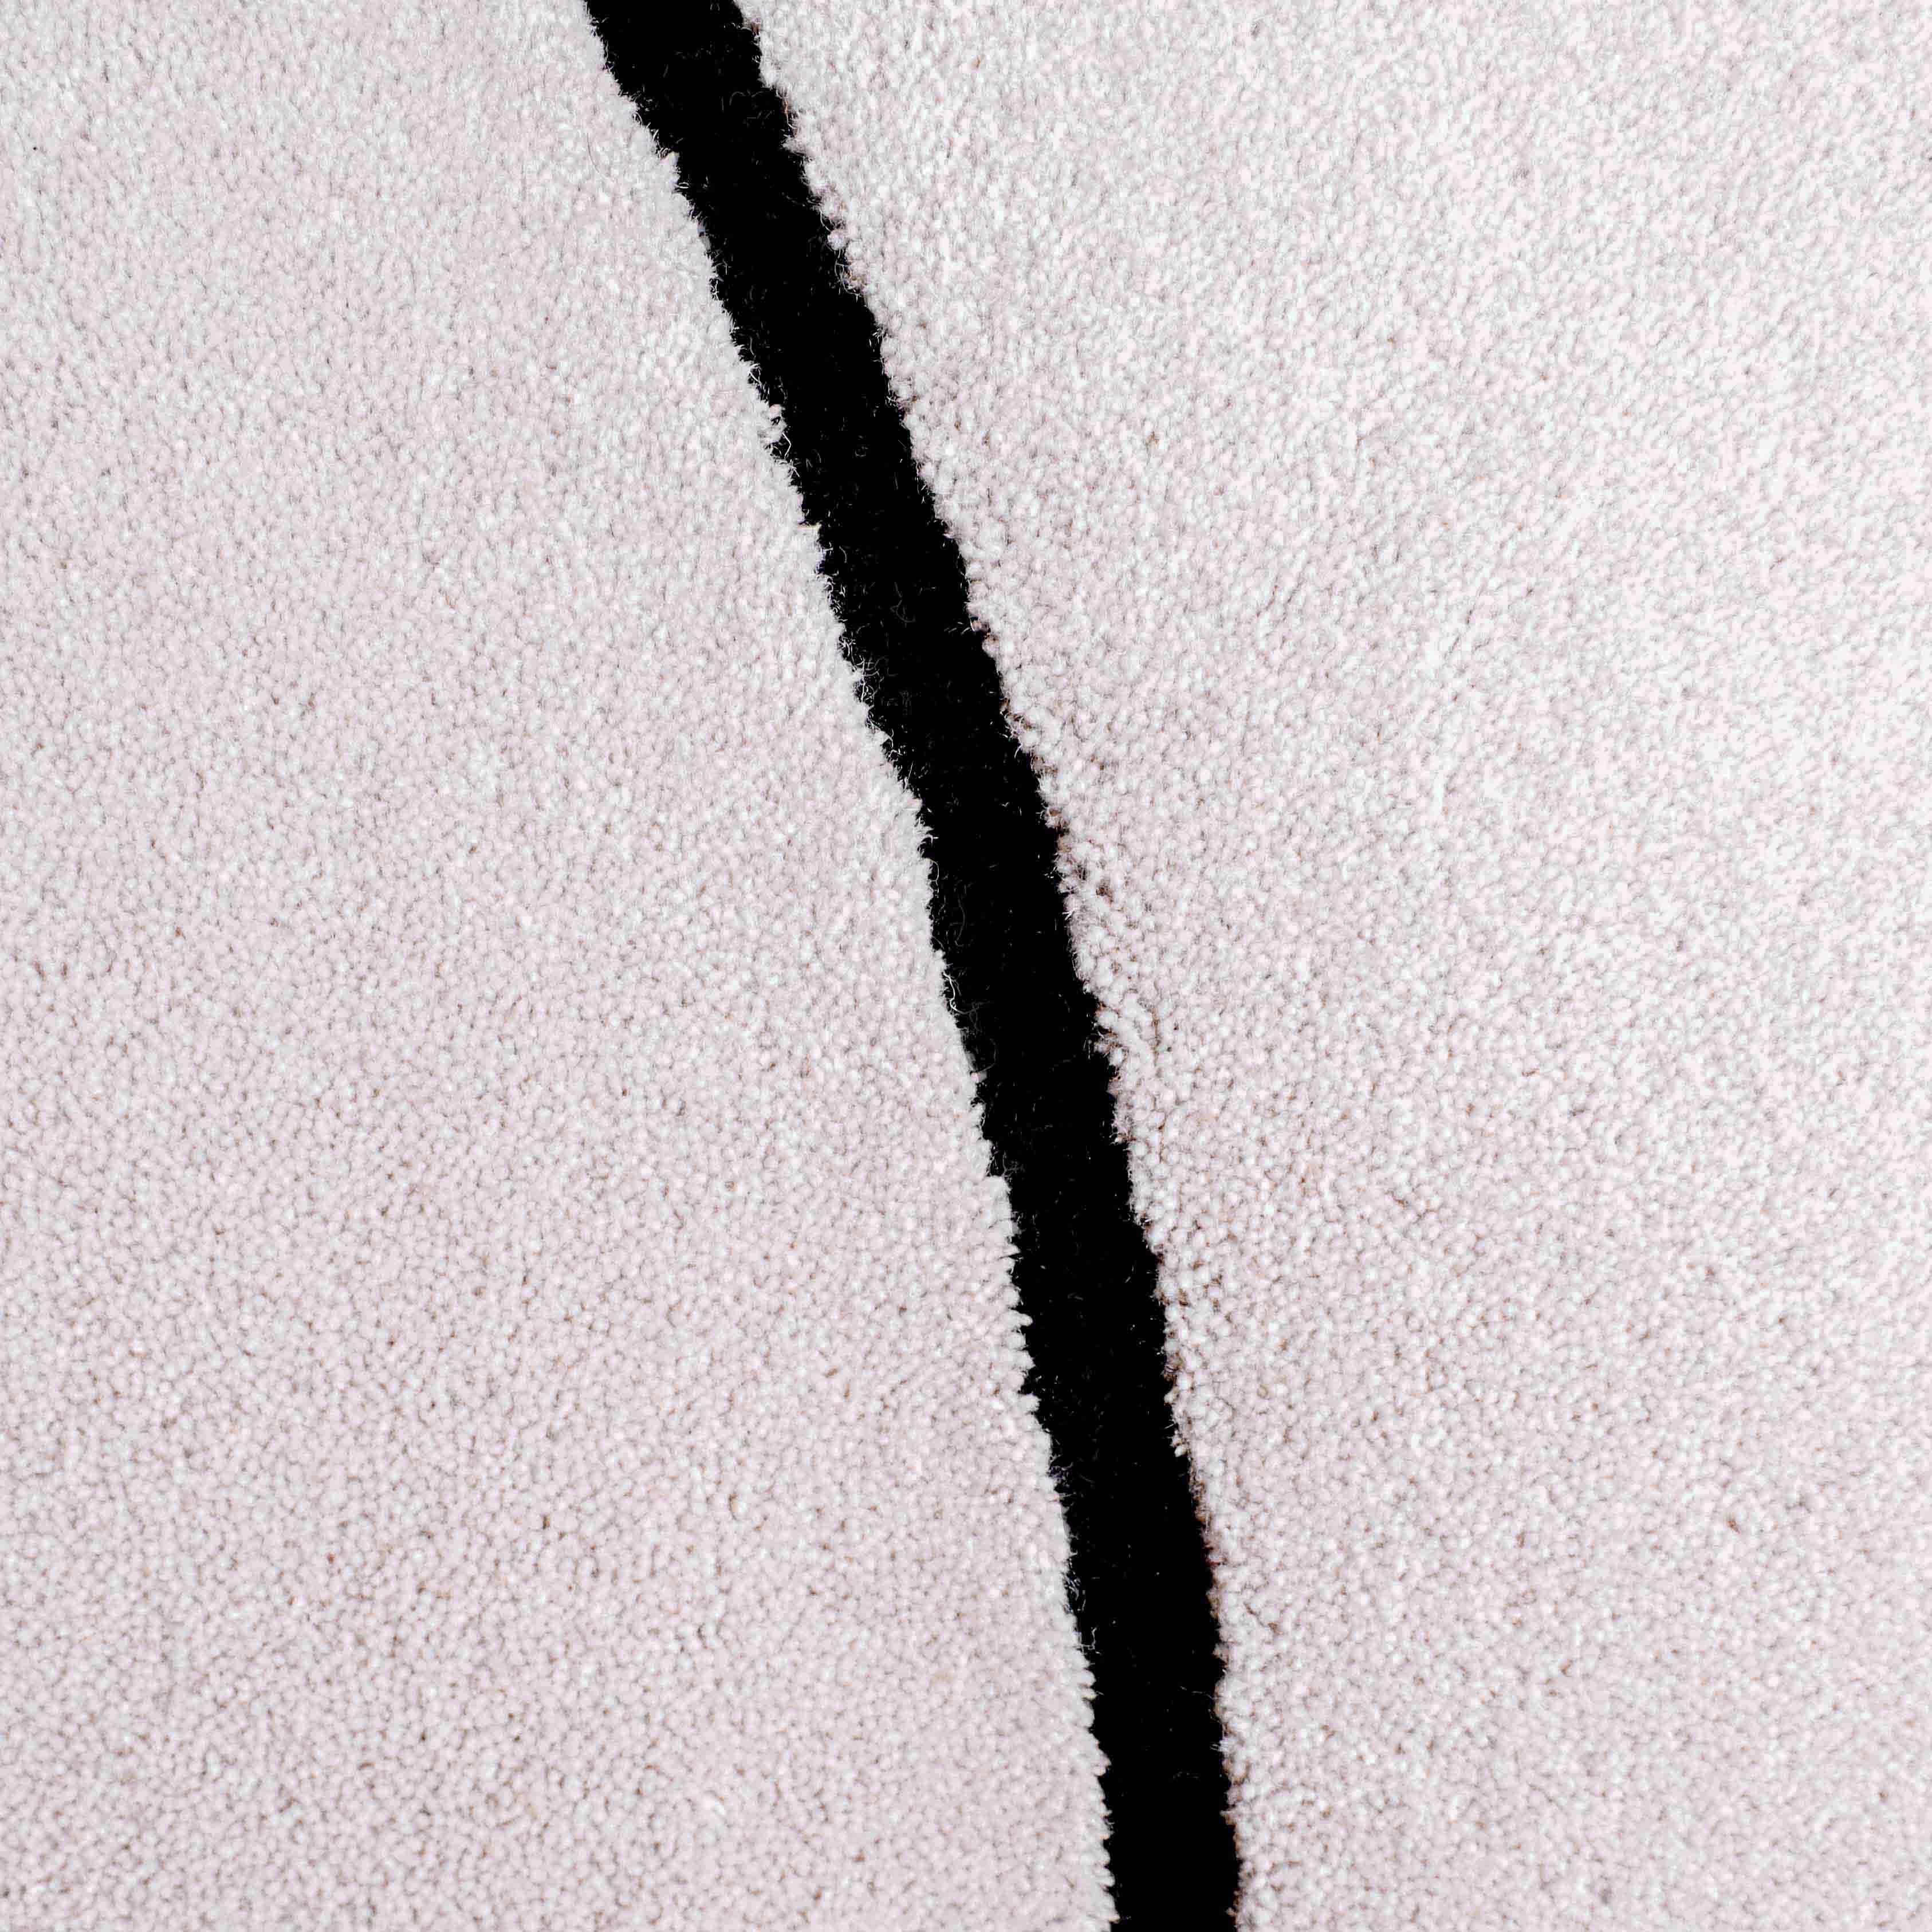 Le Squiggle gris nuage présente une surface en laine douce. 

Taille :  7 x 10 ft 
MATERIAL : Laine
Couleur : Gris clair* + Noir
Fabriqué en Suède
*Les couleurs peuvent varier en fonction de l'éclairage et de la photographie.